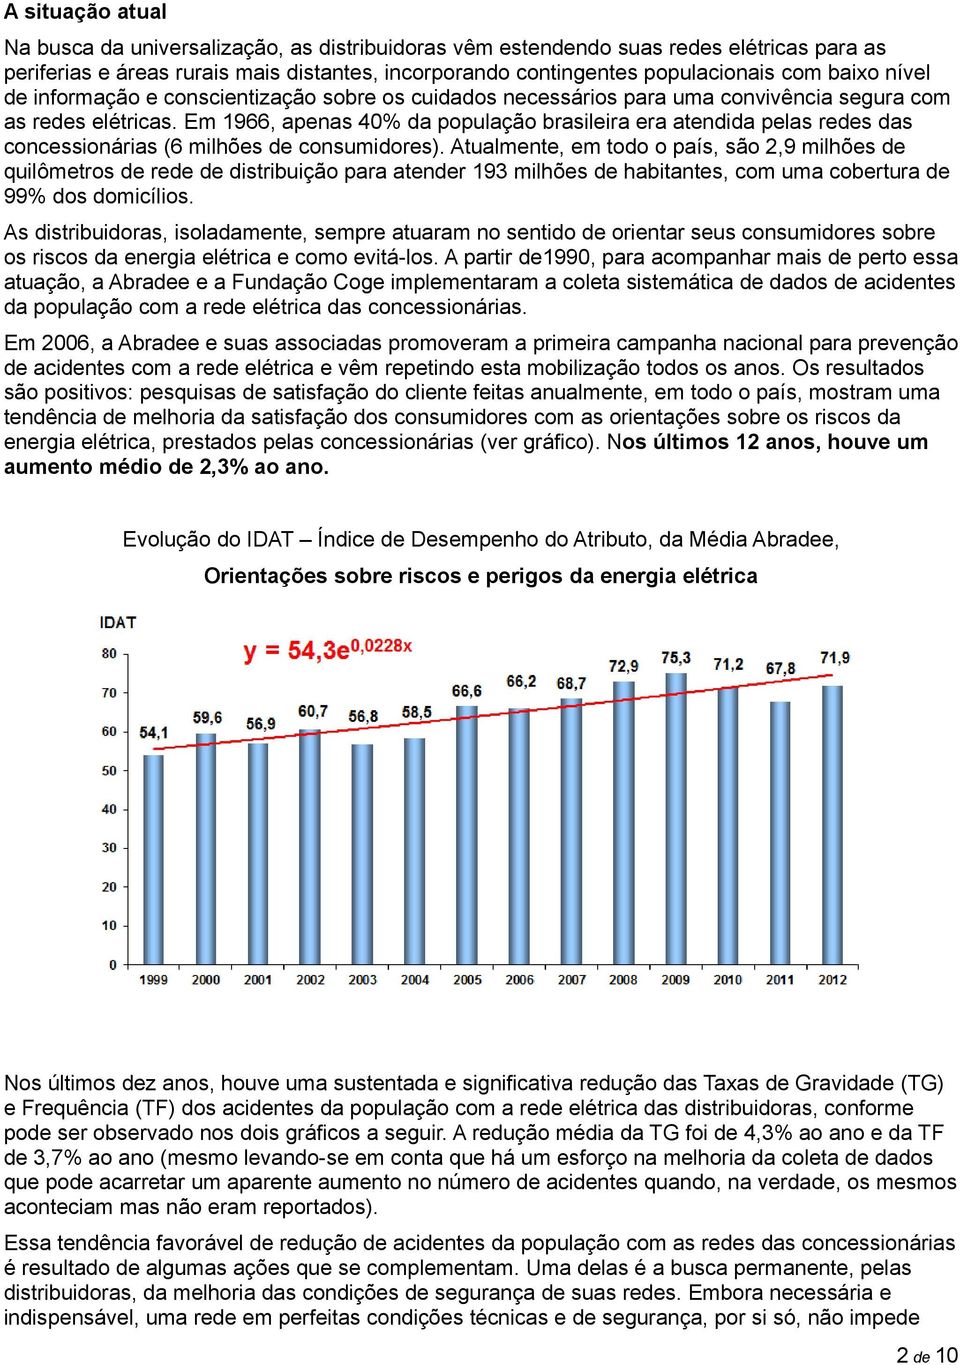 Em 1966, apenas 40% da população brasileira era atendida pelas redes das concessionárias (6 milhões de consumidores).